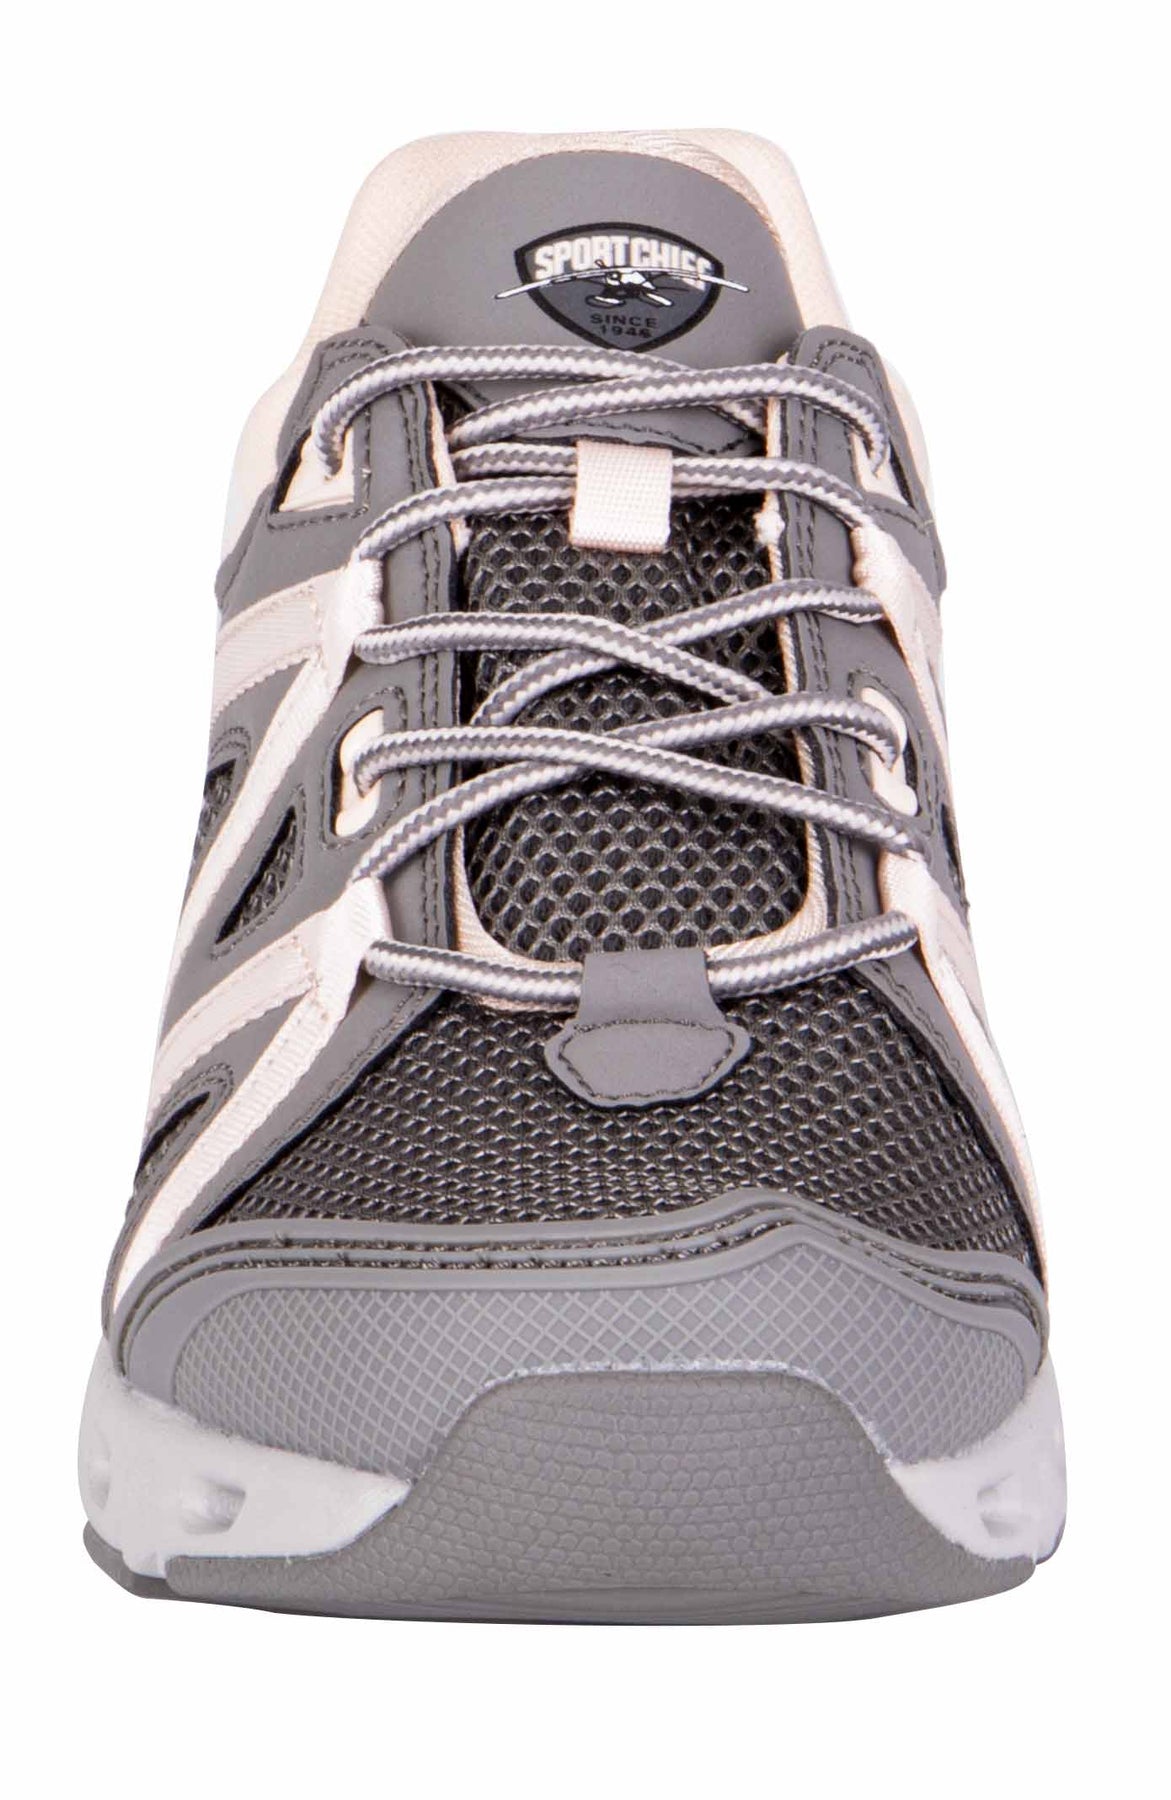 Amphibi Oceanic fishing shoe for women, 8 / Grey